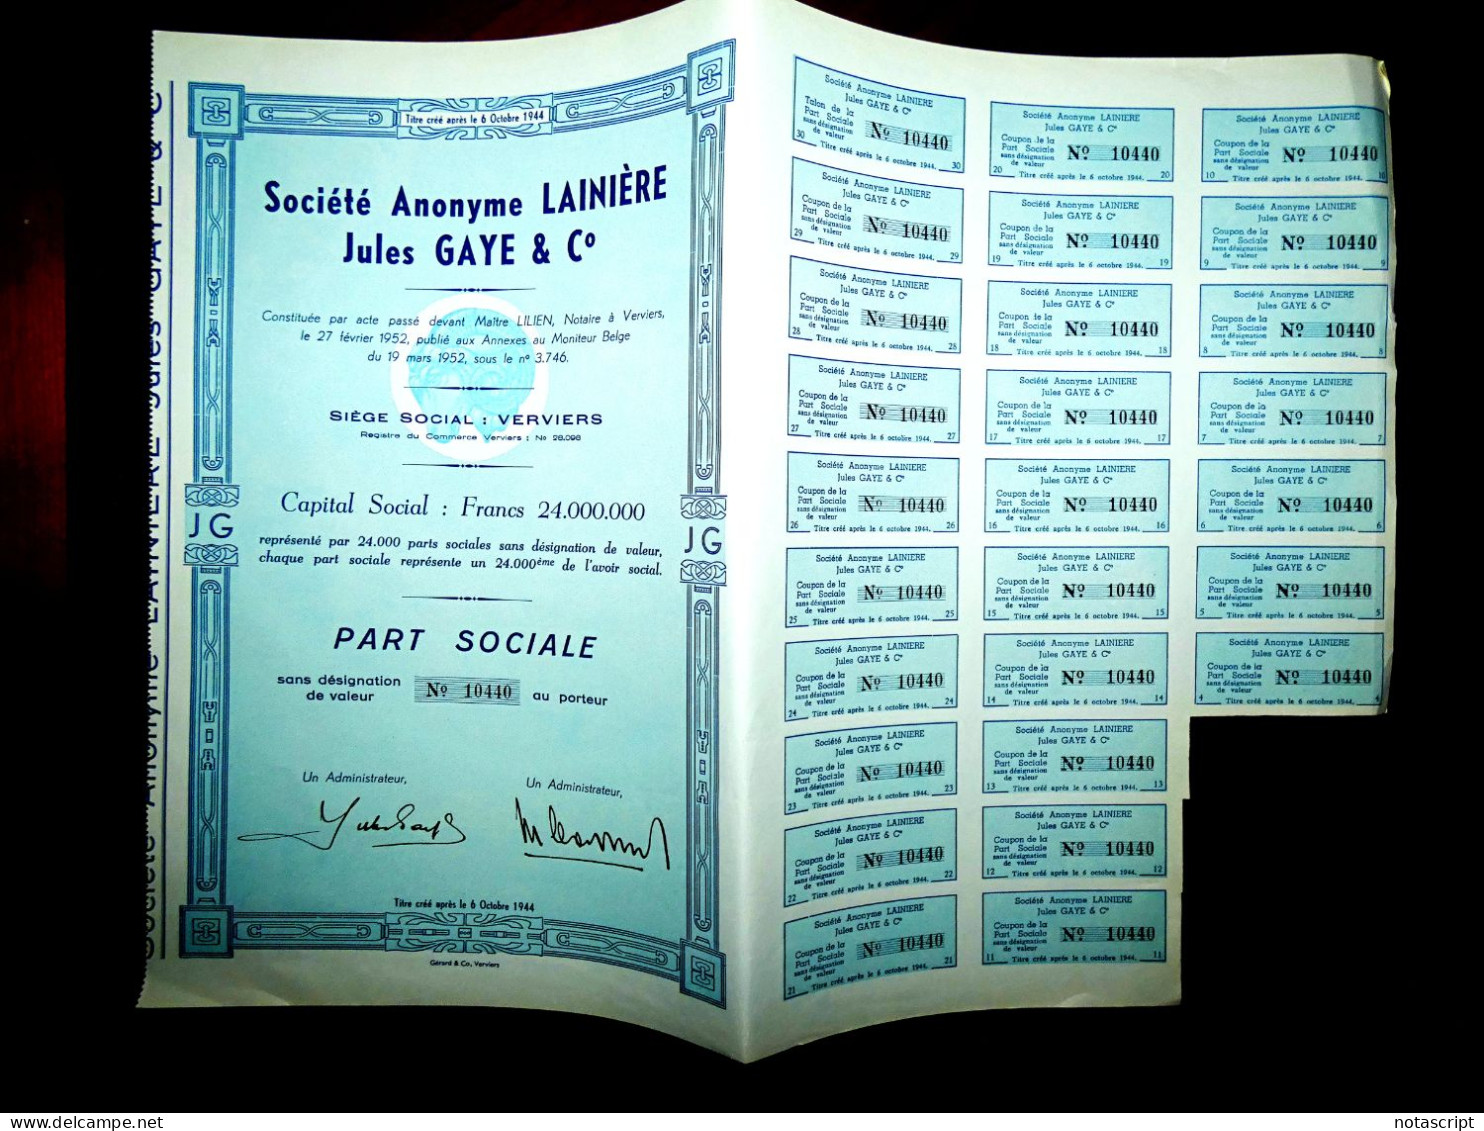 Société A,Lainière Jules Gaye & Co Verviers ,1952, Belgium Share Certificate - Textiel